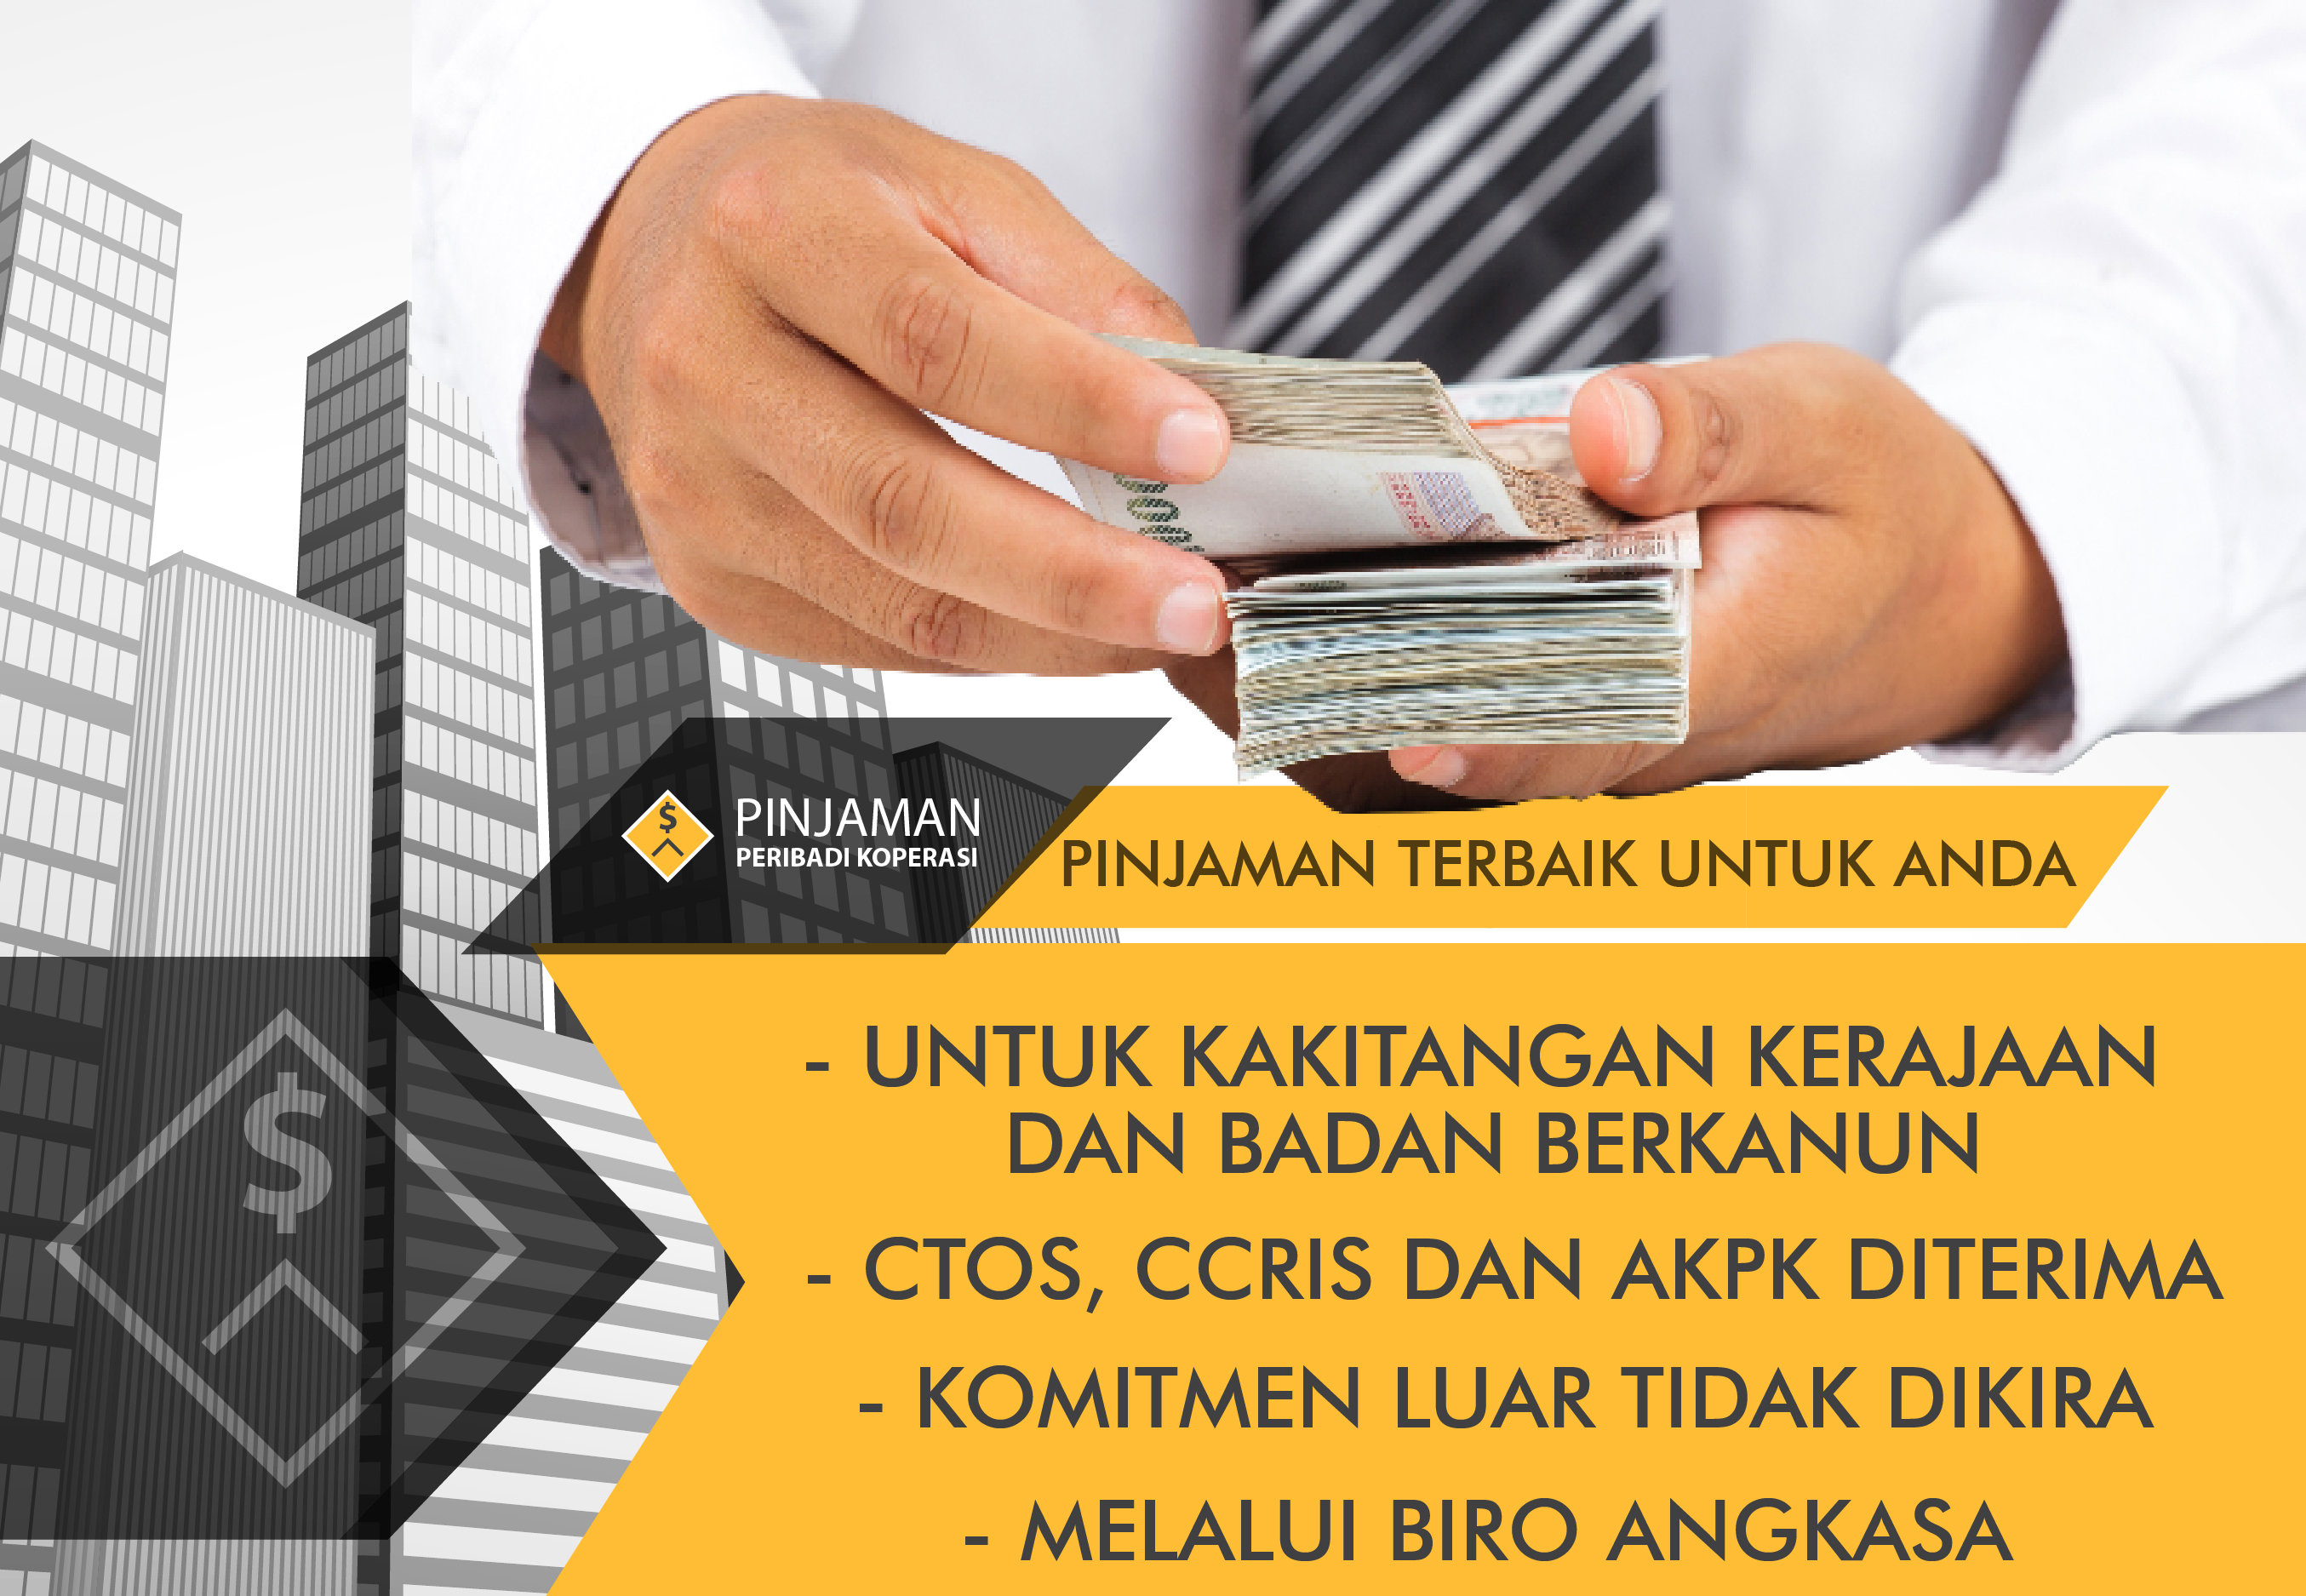 Koperasi Wawasan Malaysia Berhad Terengganu Promosi Pinjaman Koperasi